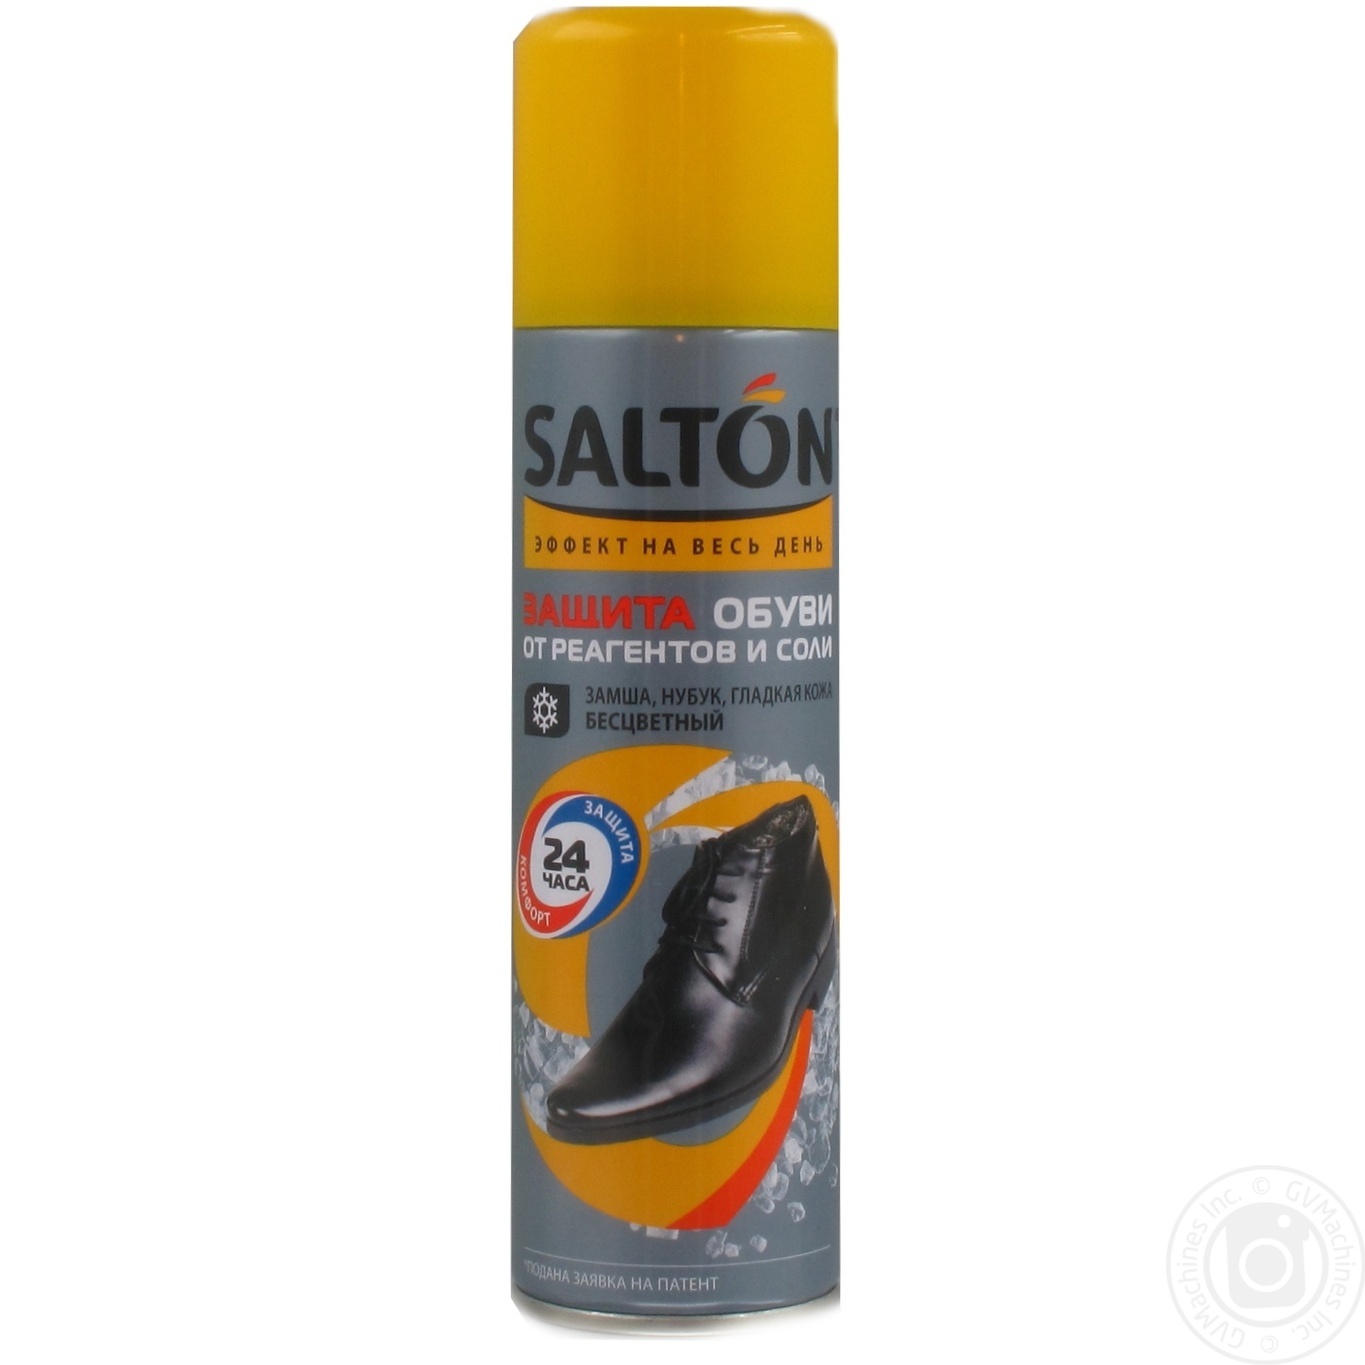 Спрей SALTON Защита обуви от реагентов и соли в Киеве